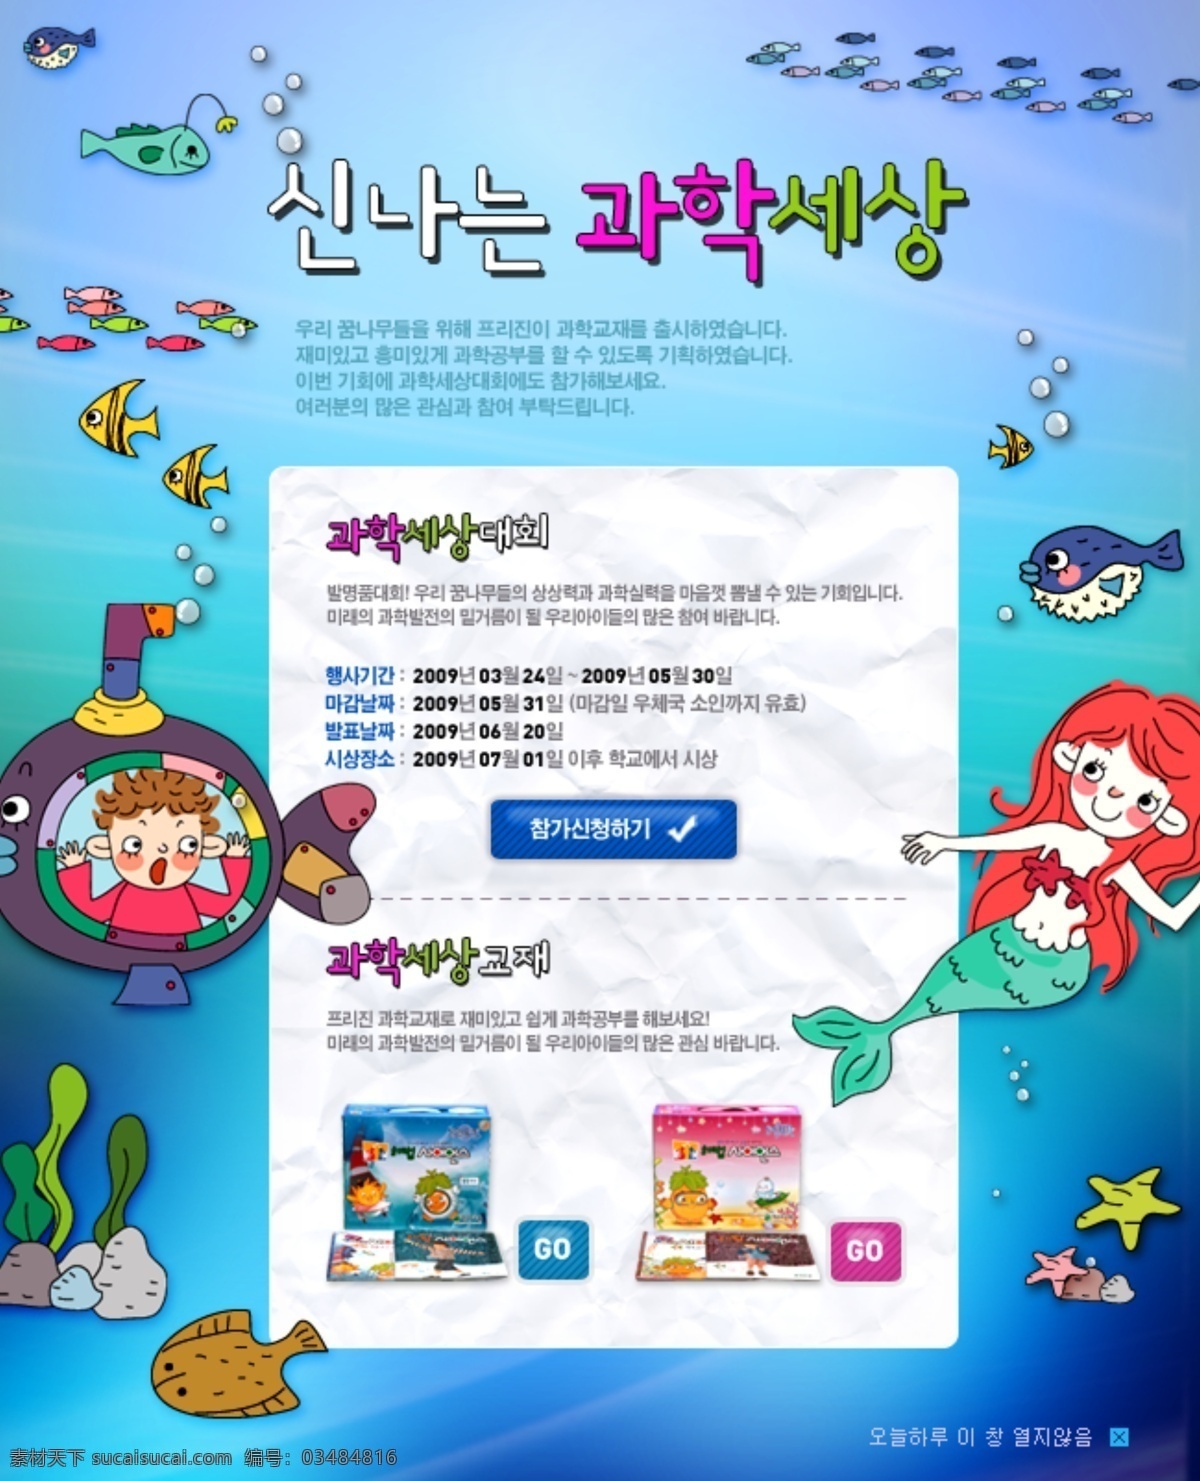 可爱 卡通 网页设计 模版 海底世界 海星 海鱼 海藻 韩文字体 卡通可爱素材 美人鱼 鲨鱼 潜水艇 网页素材 网页模板